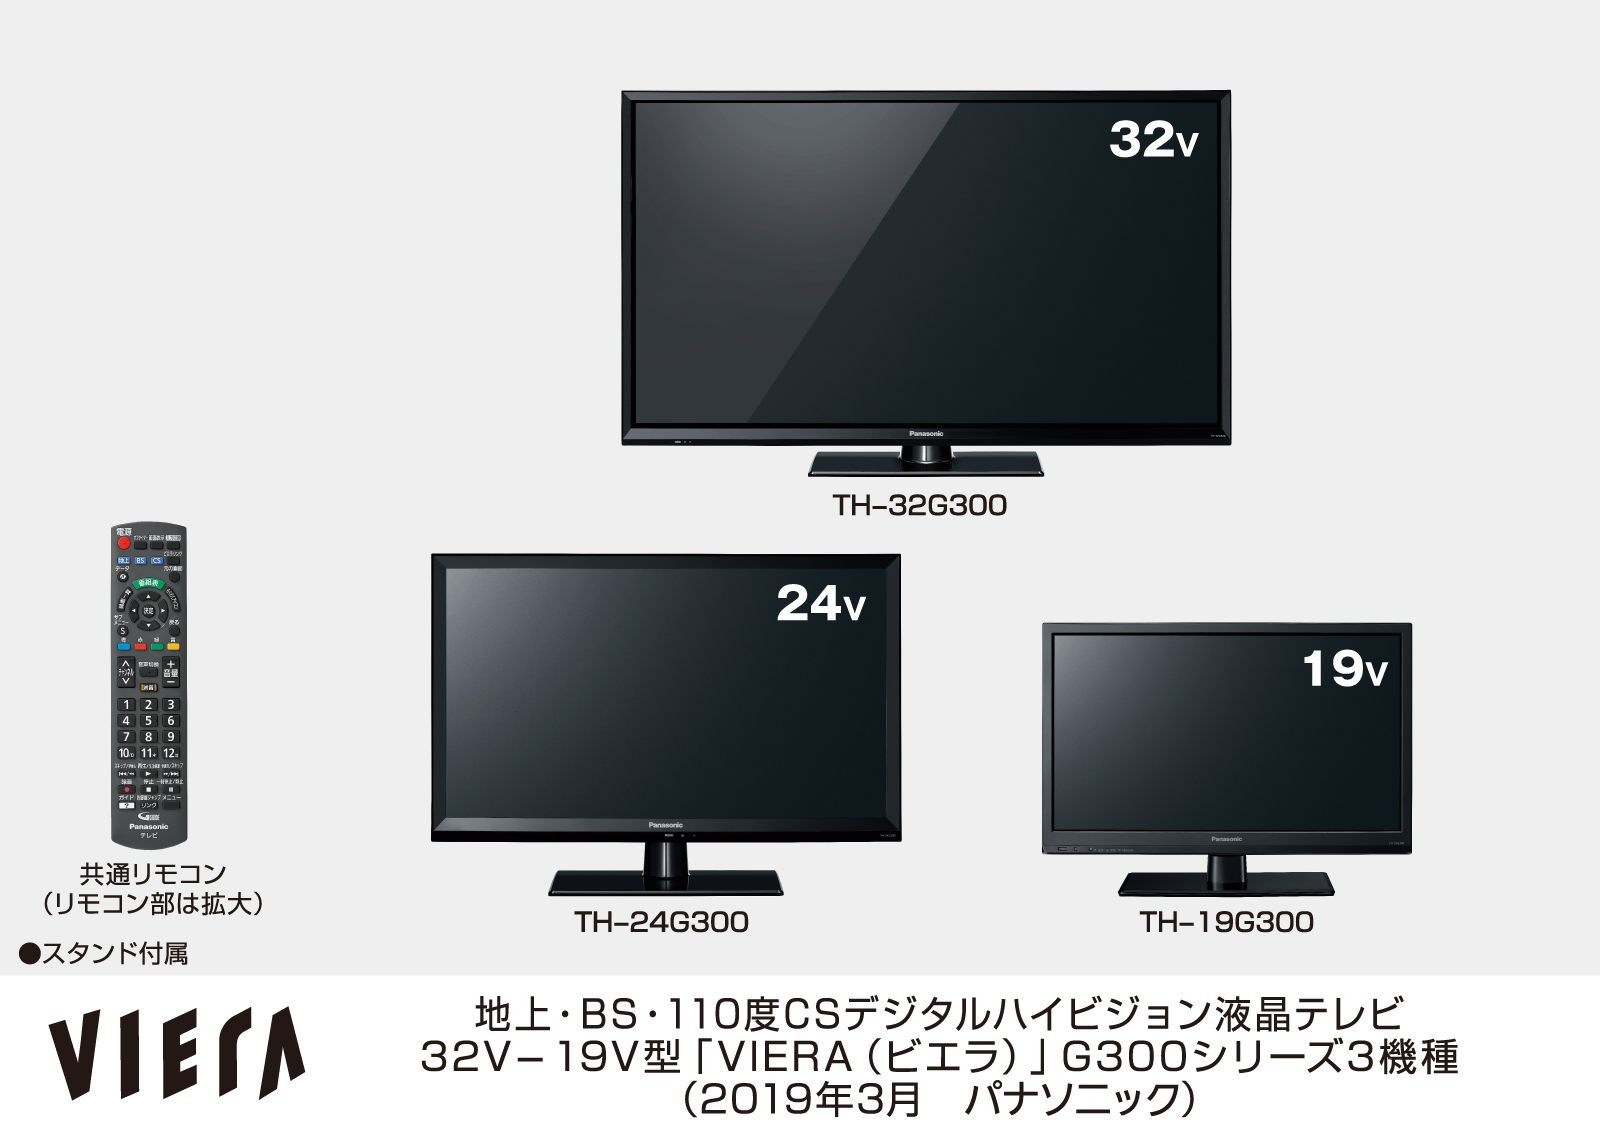 【美品】Panasonic TH-19G300 19インチ液晶テレビ